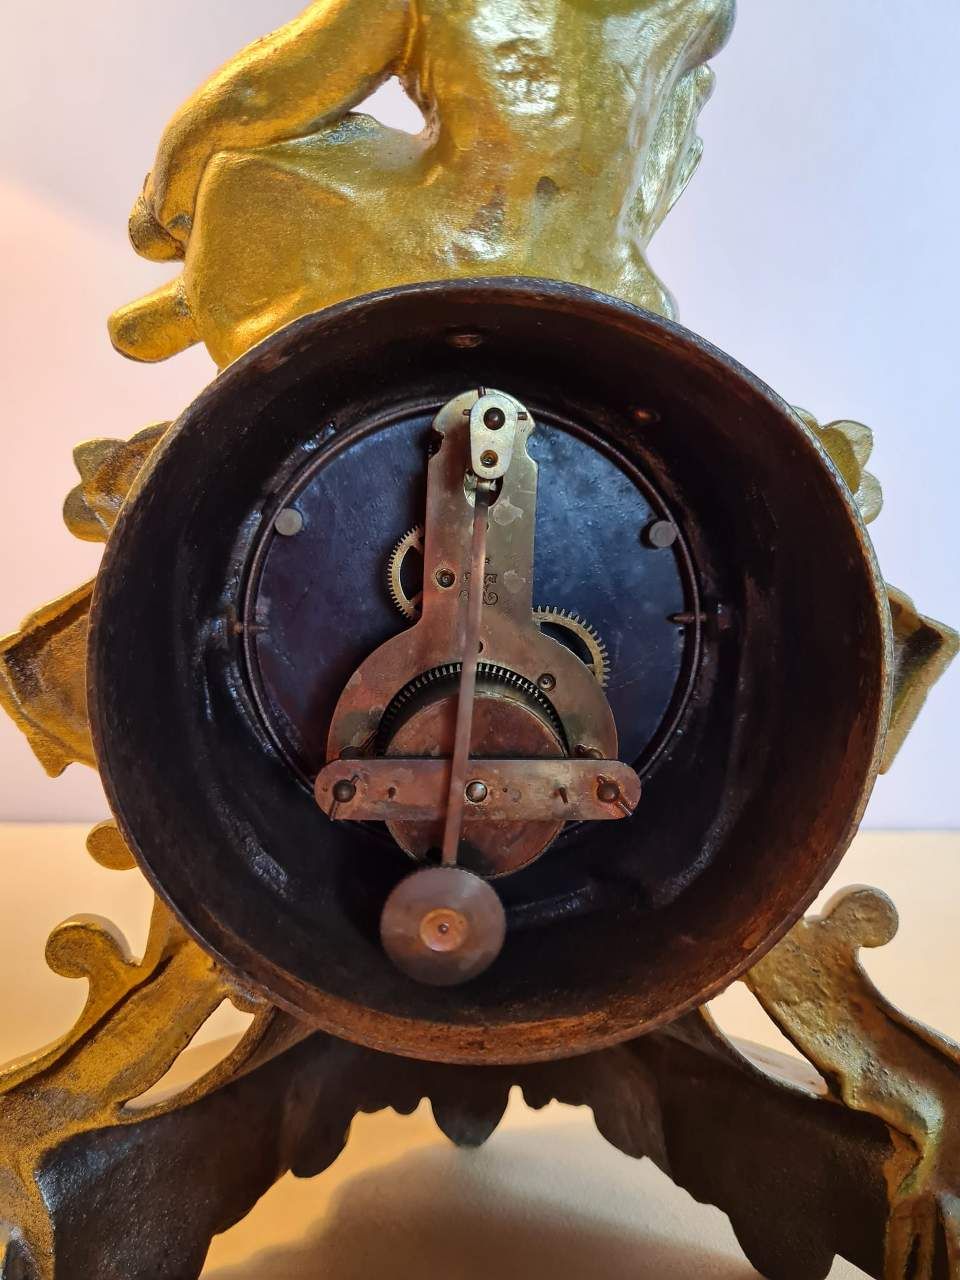 Antique Fireplace Clock,Antique fireplace clock made of metal material.